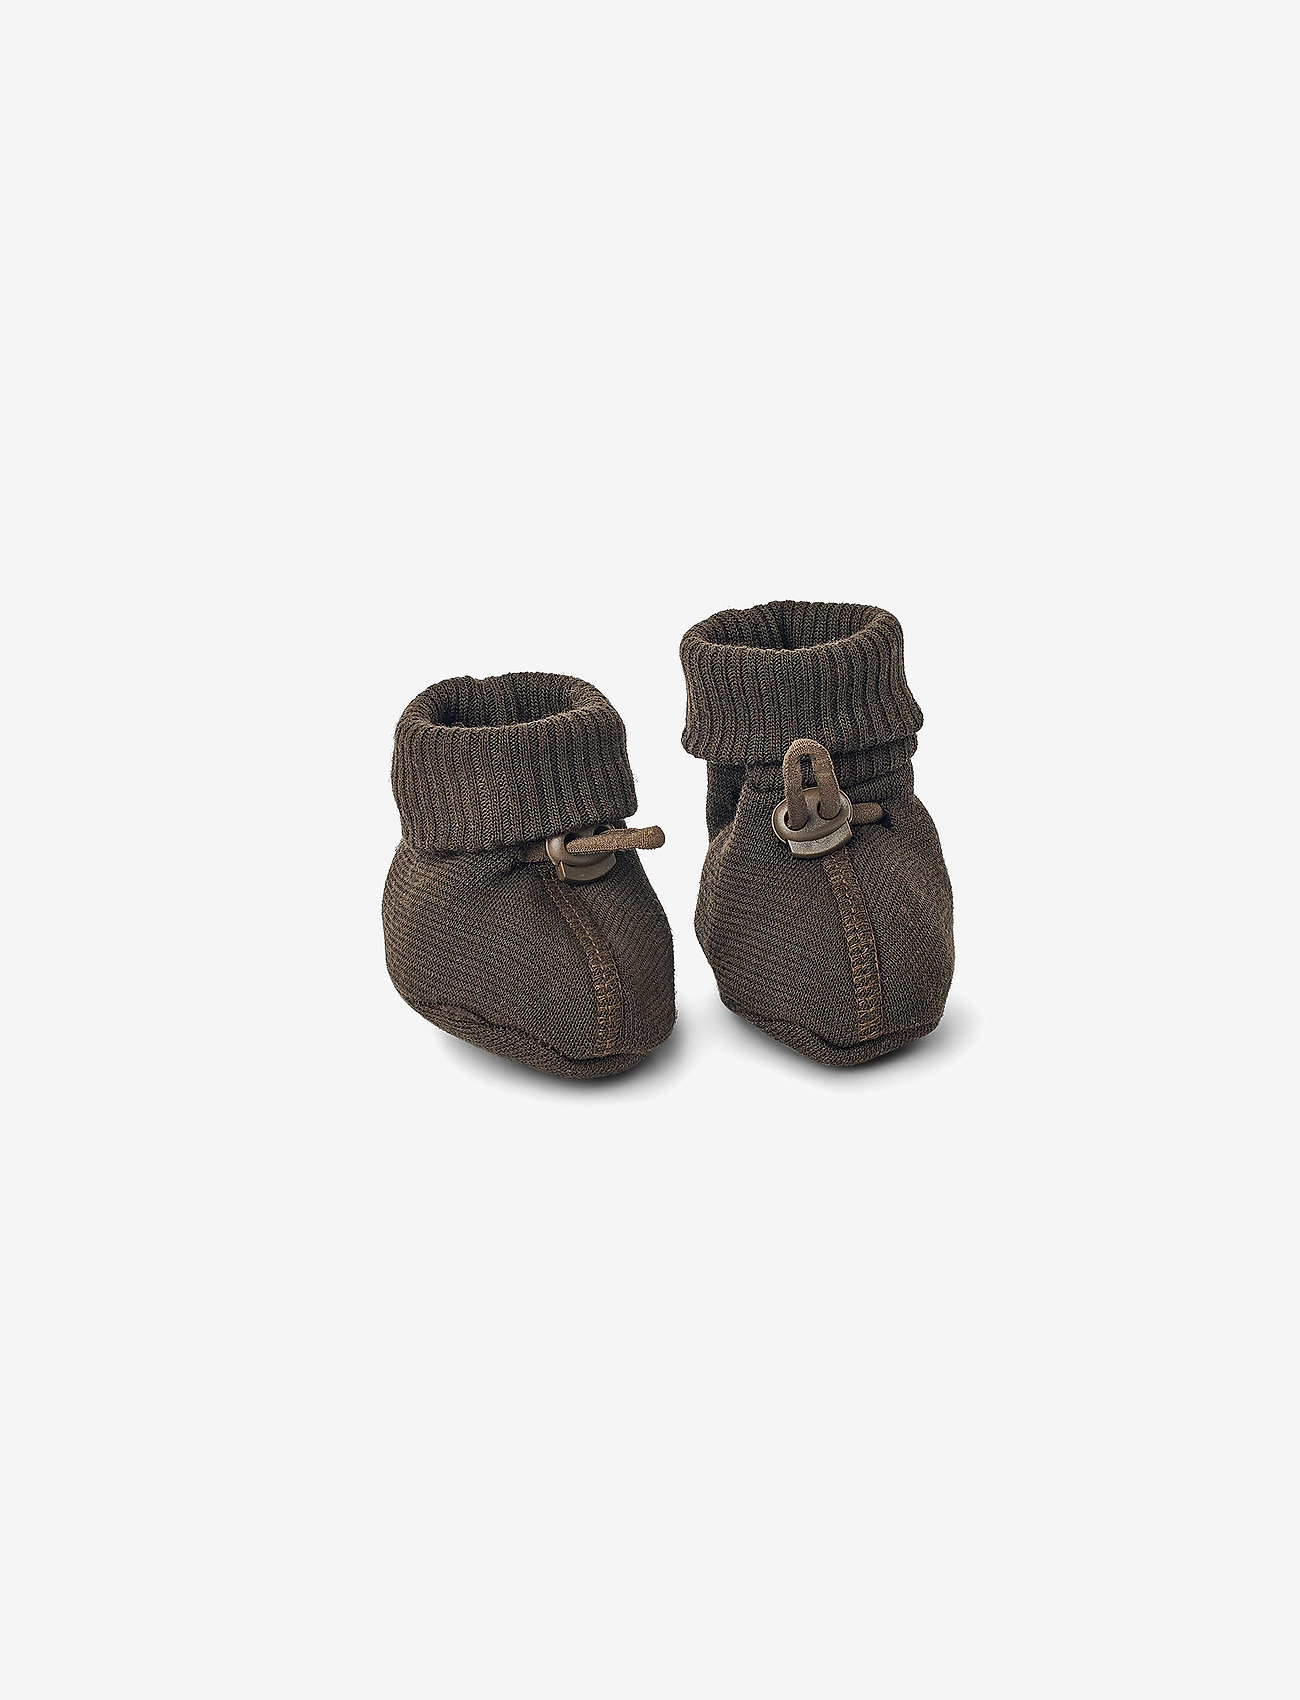 Smallstuff - Booties  merino wool, brown - acheter par âge - brown - 0